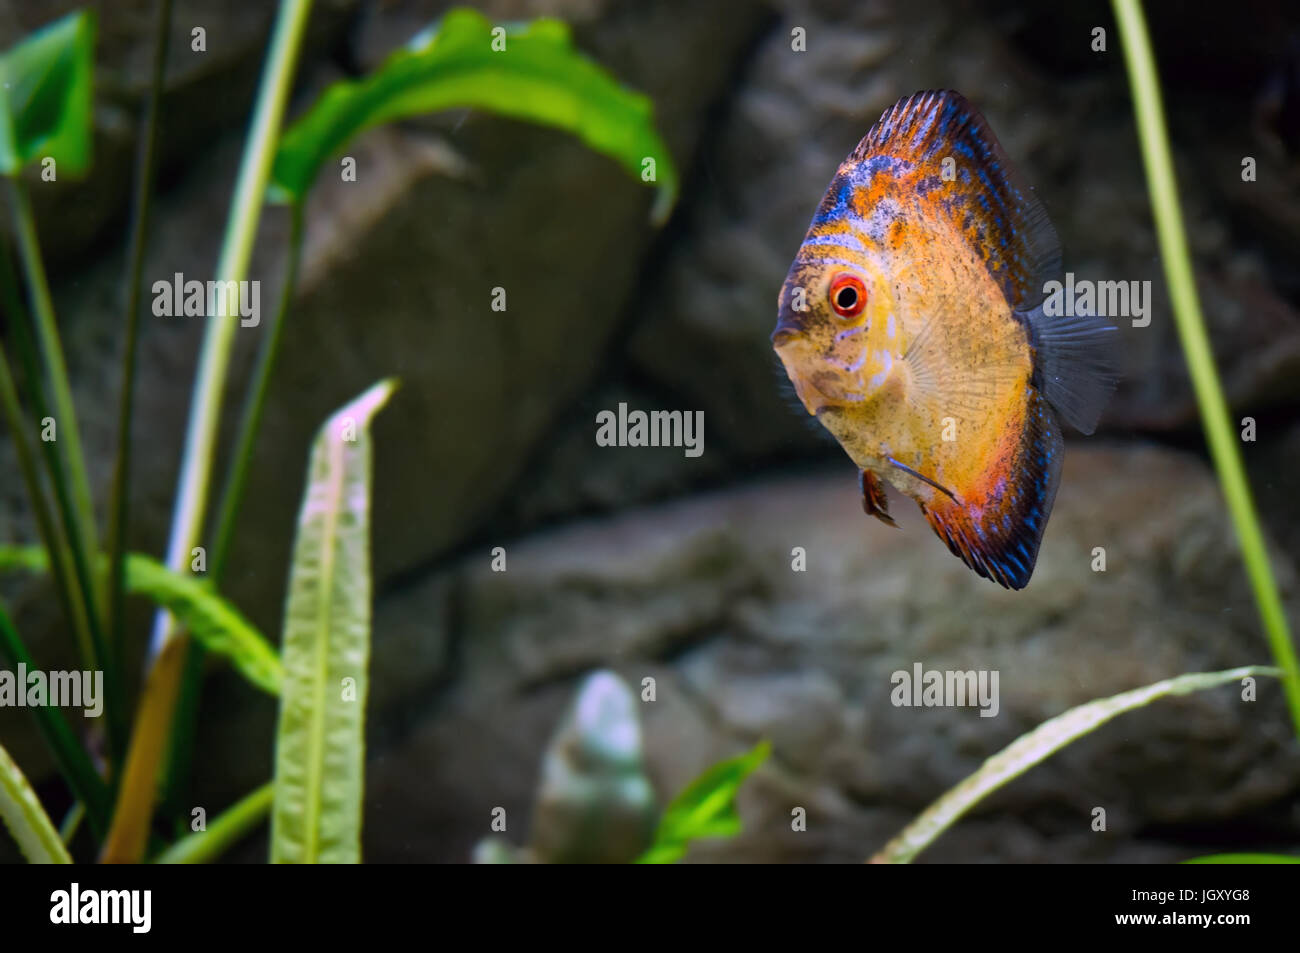 Beautiful goldfish swims among algae in the aquarium. Aquarium fish close-up. Stock Photo